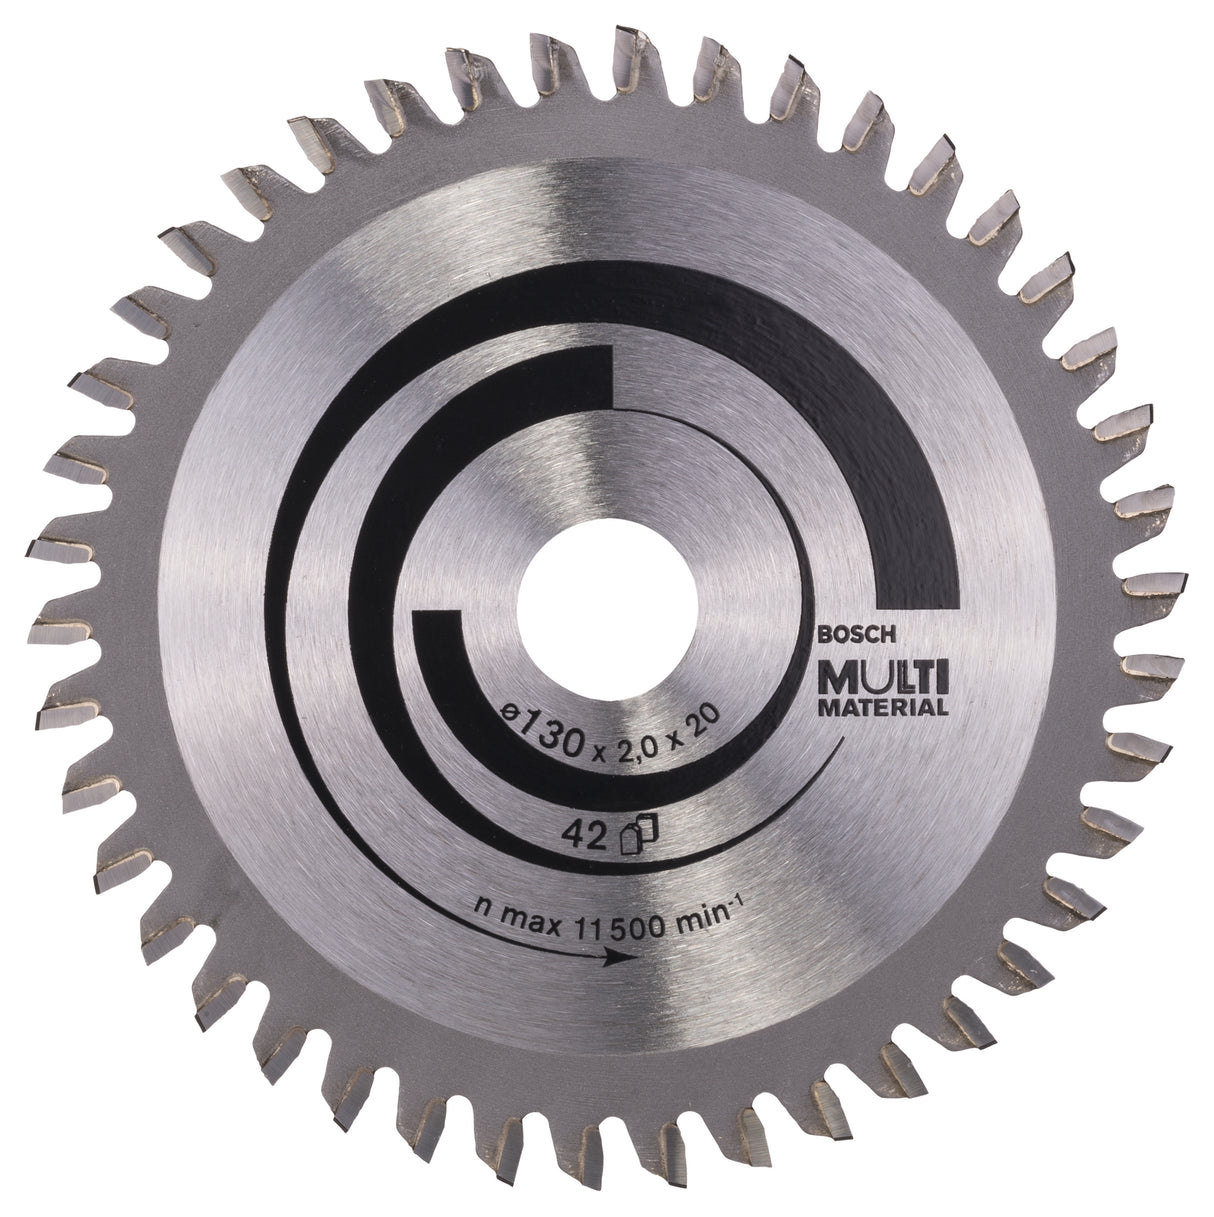 Bosch Professional Multi Material Circular Saw Blade - 130 x 20/16 x 2.0 mm, 42 Teeth